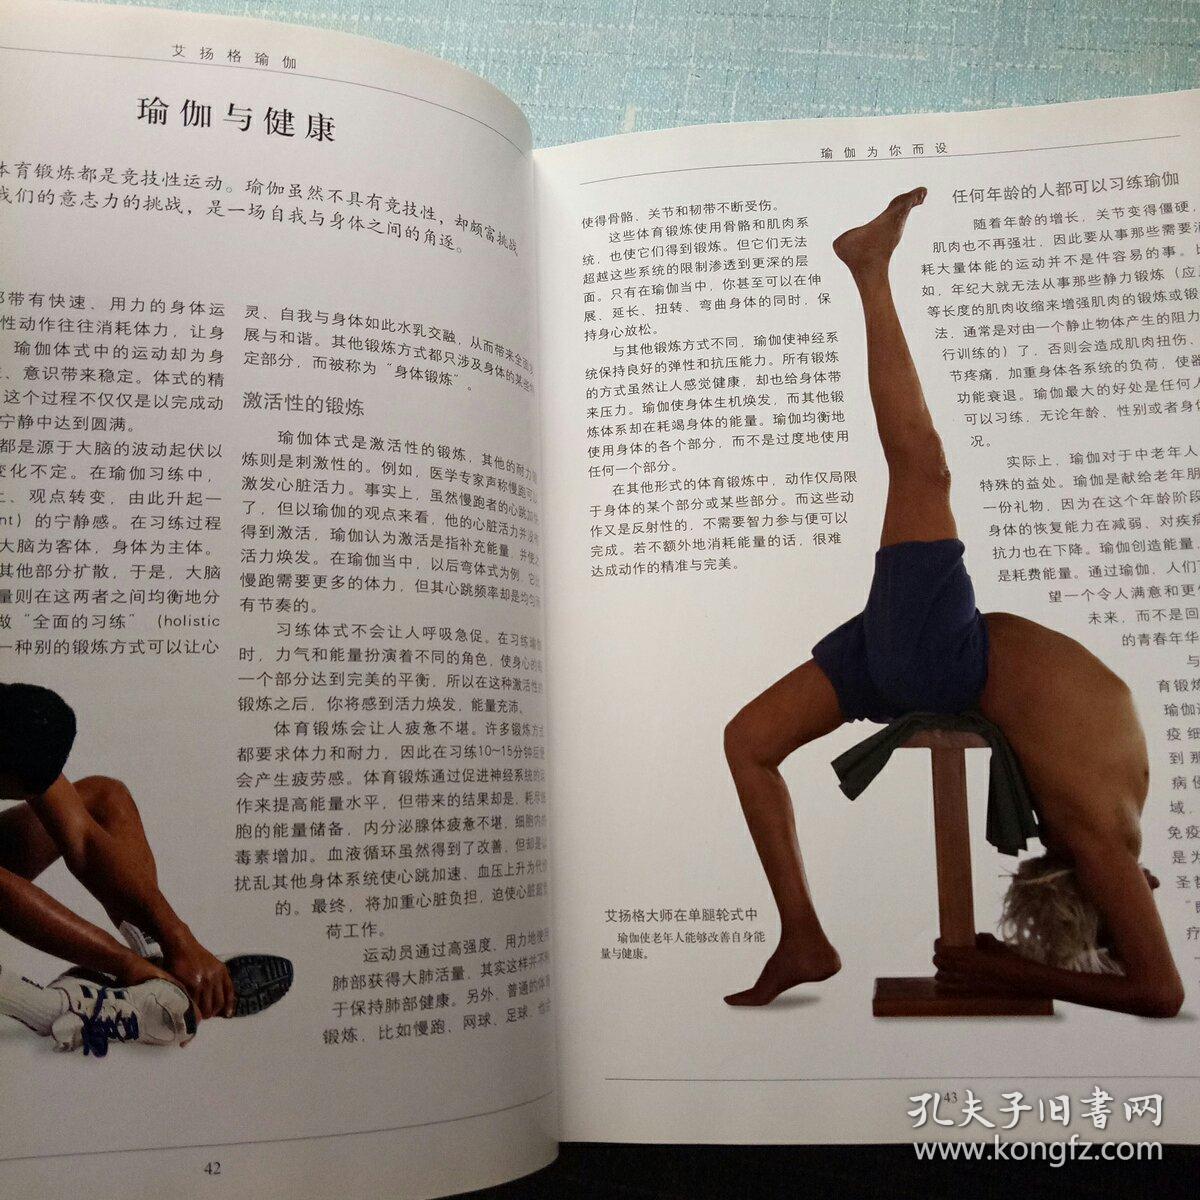 4、艾揚格瑜伽的密集練習和精確練習這兩本書哪個更好 